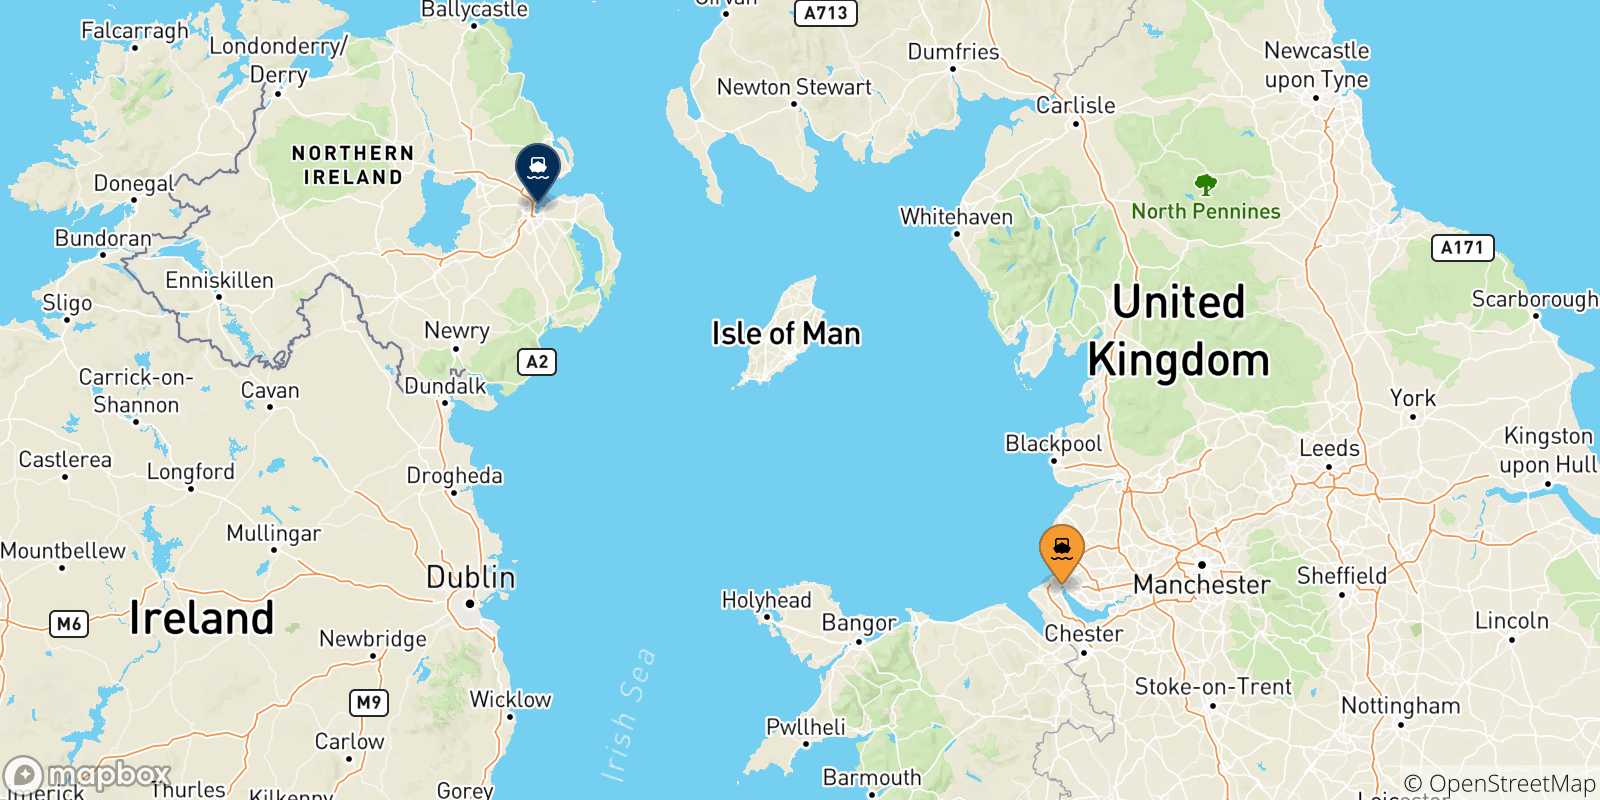 Mappa delle possibili rotte tra l'Inghilterra e il Regno Unito